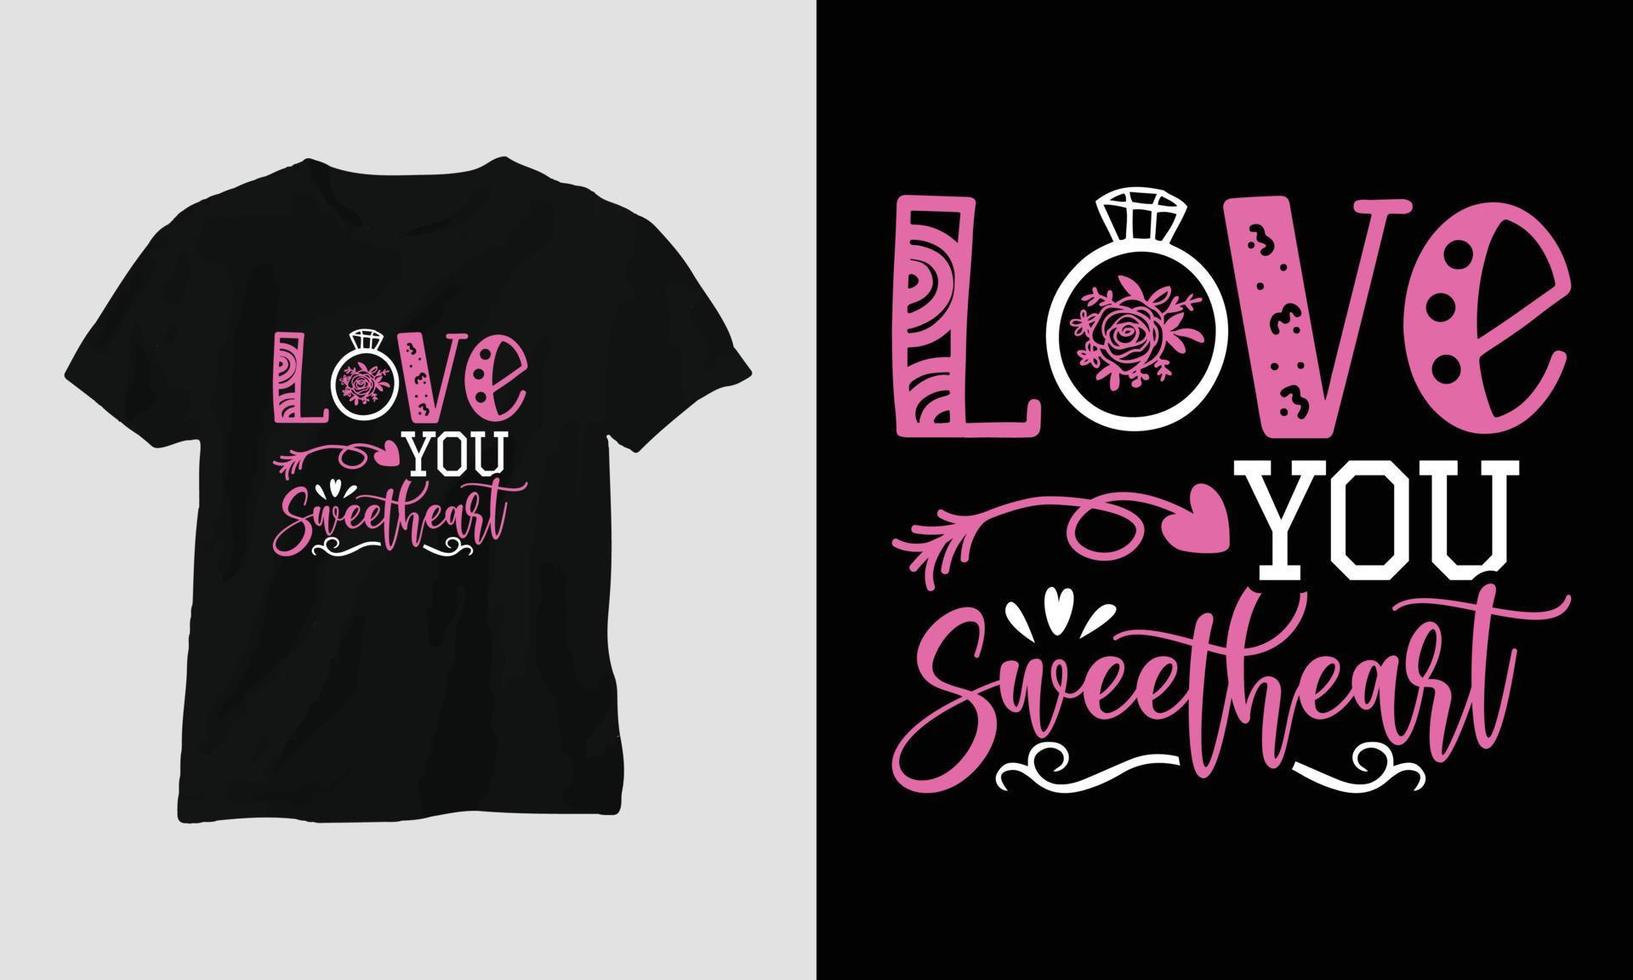 liebe dich schatz - valentinstag typografie t-shirt design mit herz, pfeil, kuss und motivierenden zitate vektor